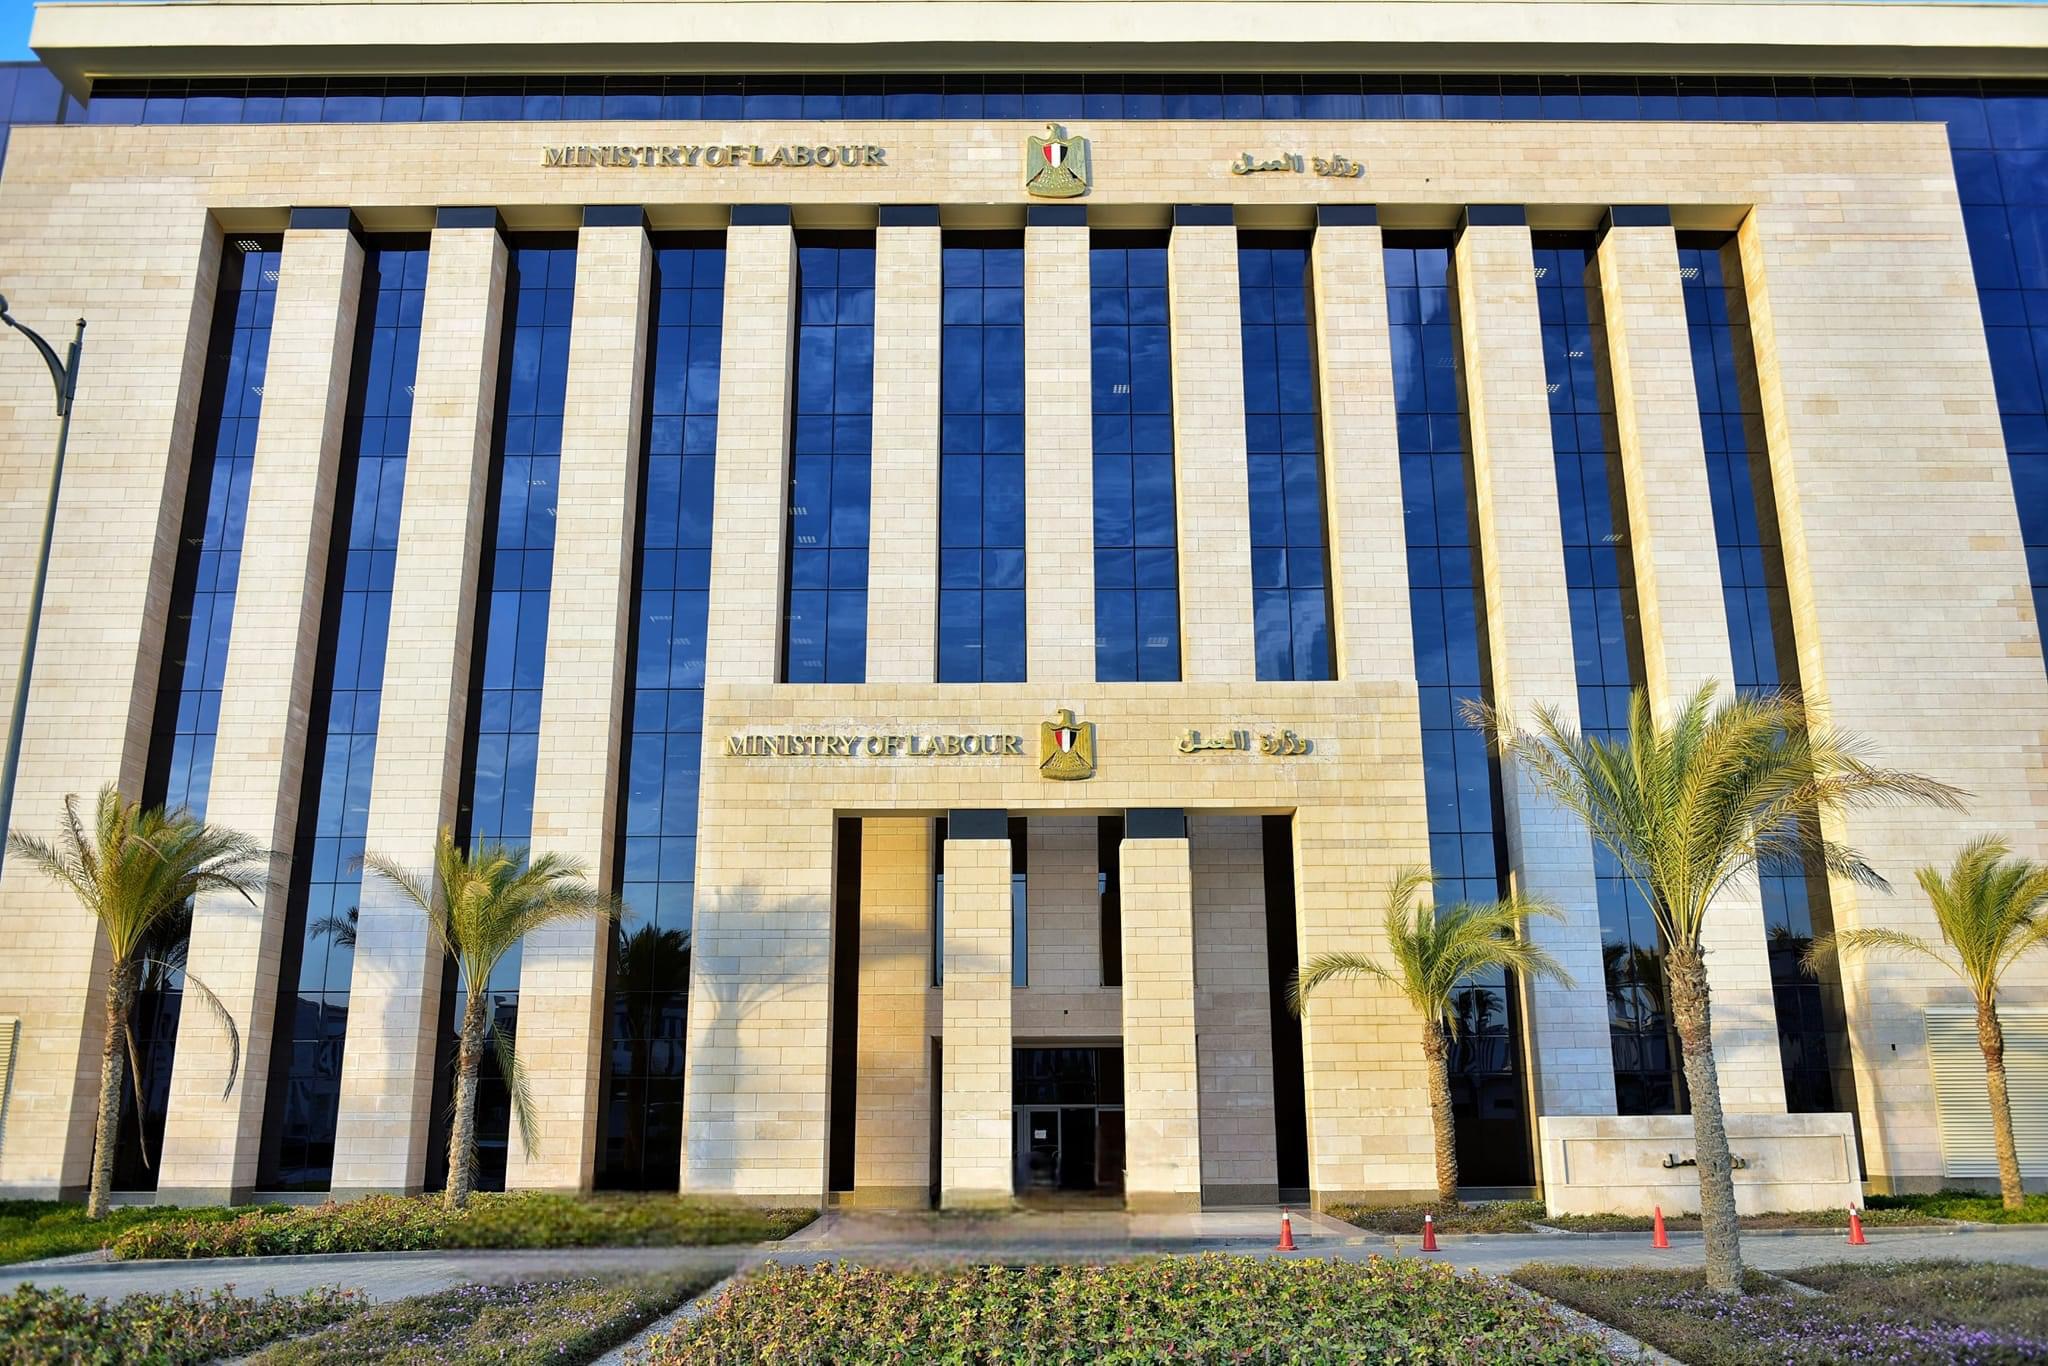 خطة وزارة العمل للإنتهاء من منظومة التحول الرقمي تمهيدًا لإطلاقها على "مصر الرقمية" لتقديم الخدمات إلكترونيًا للمواطنين